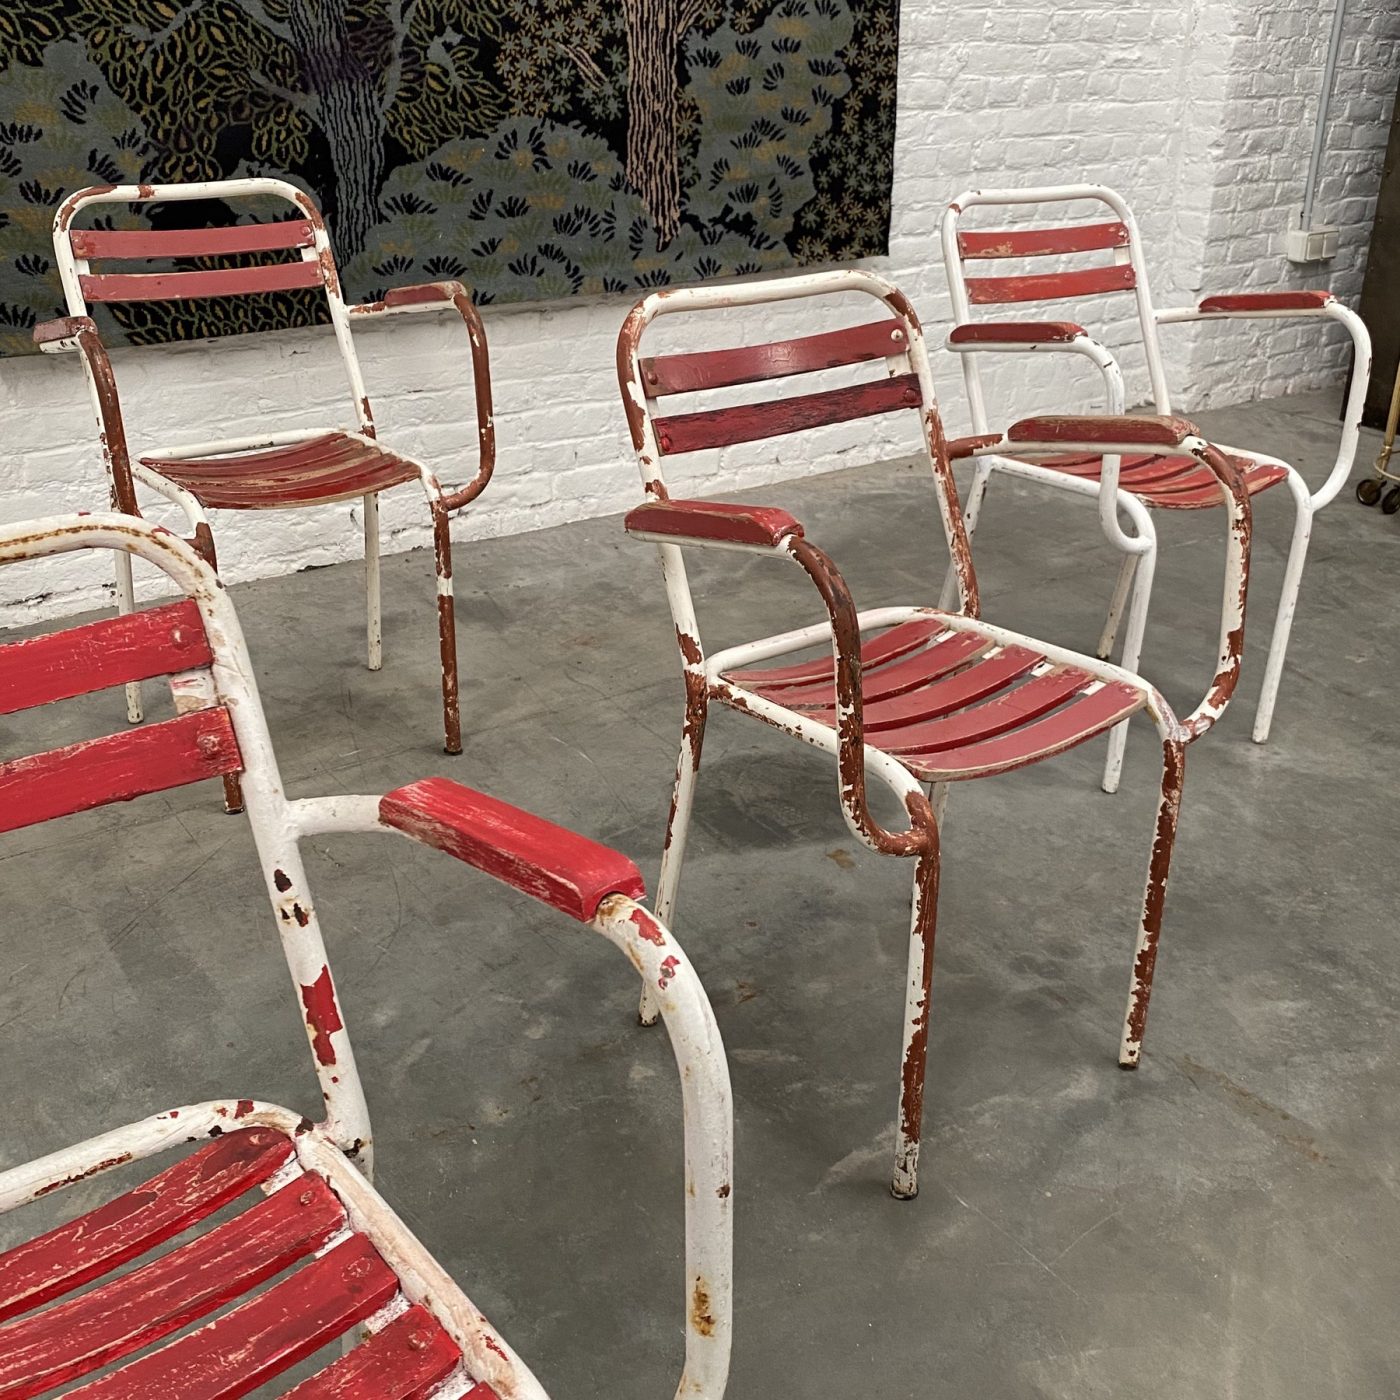 objet-vagabond-garden-chairs0007